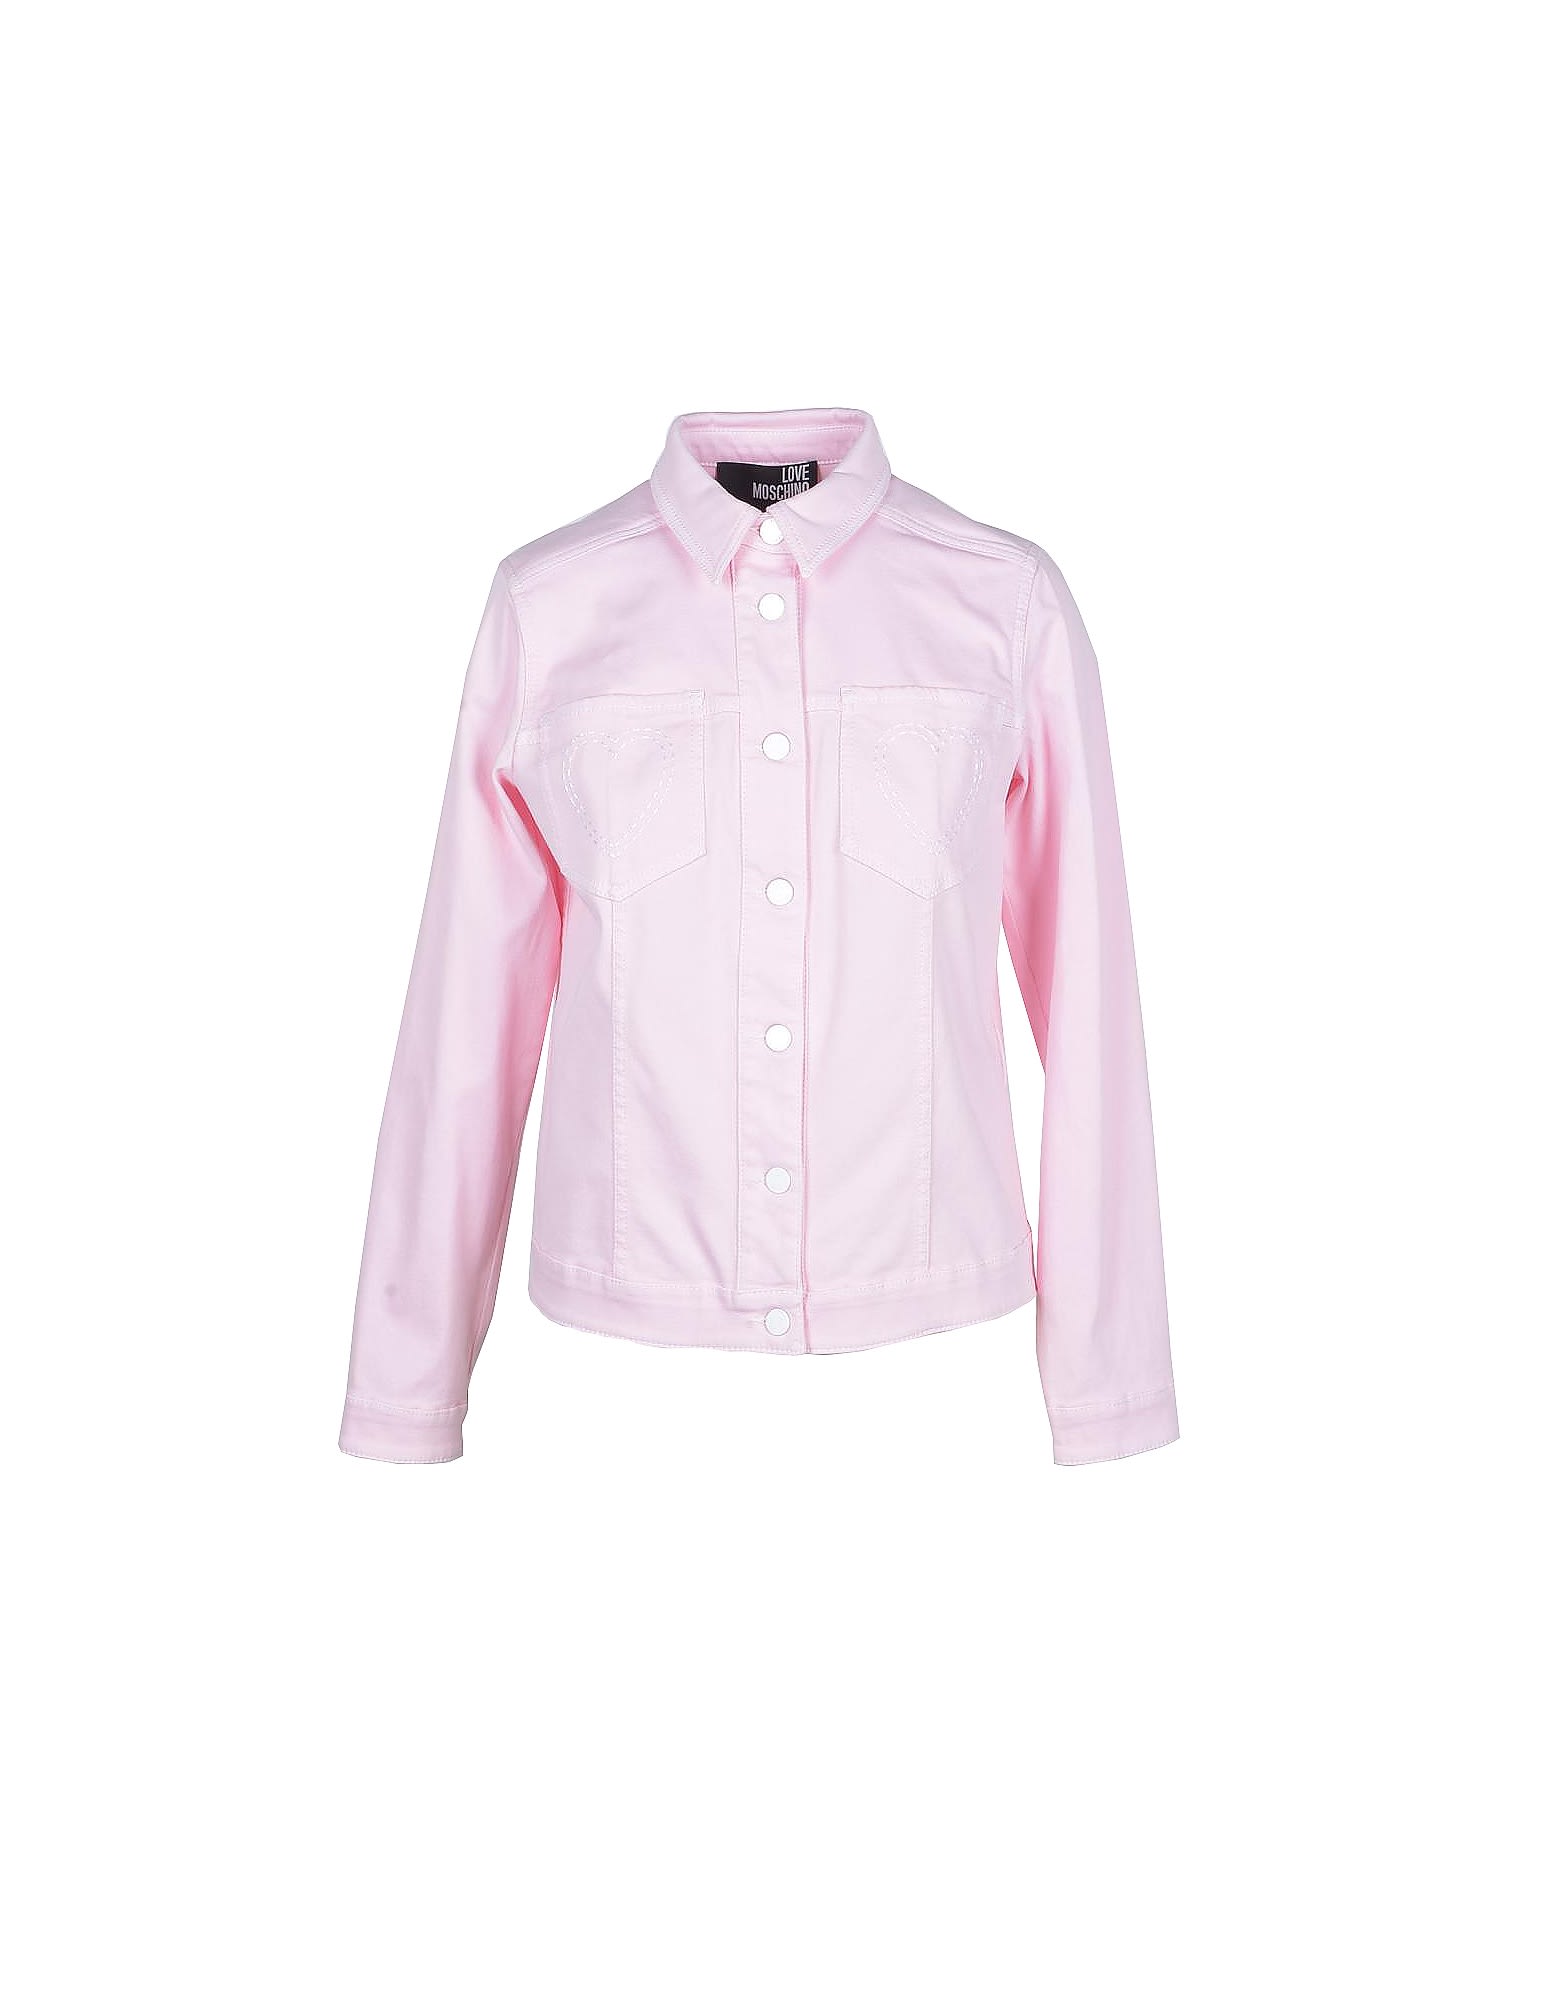 Love Moschino Womens Pink Denim Jacket